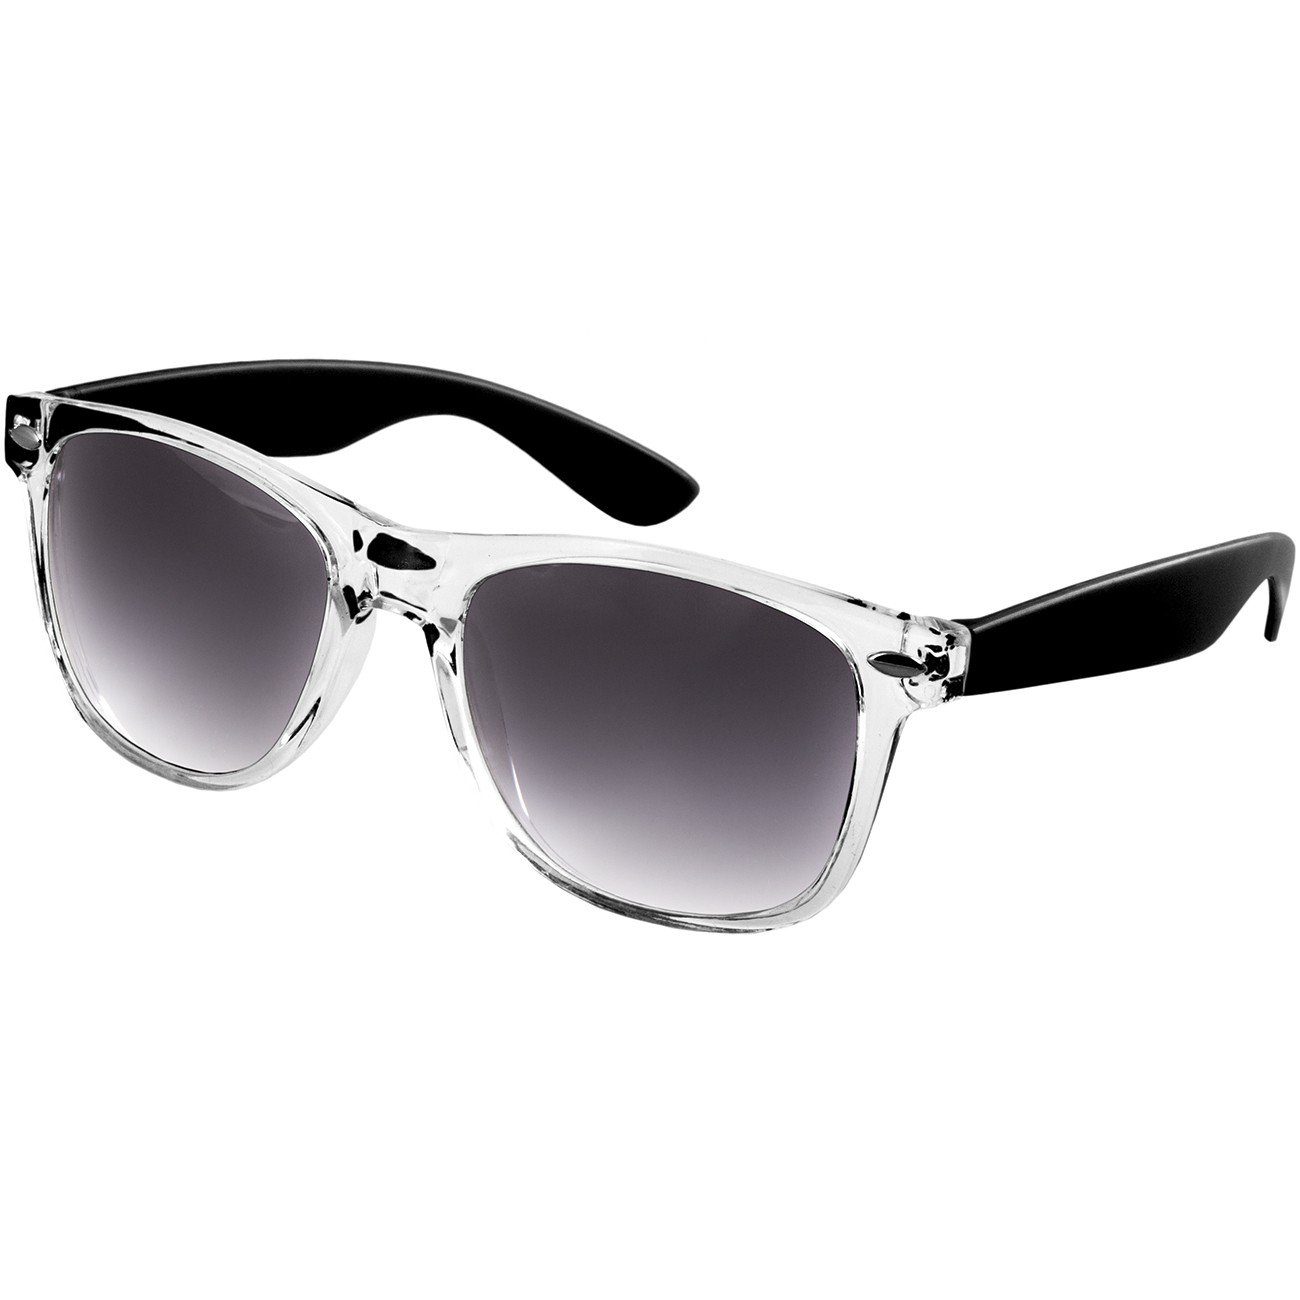 Caspar Sonnenbrille SG017 Damen RETRO Designbrille schwarz / schwarz getönt